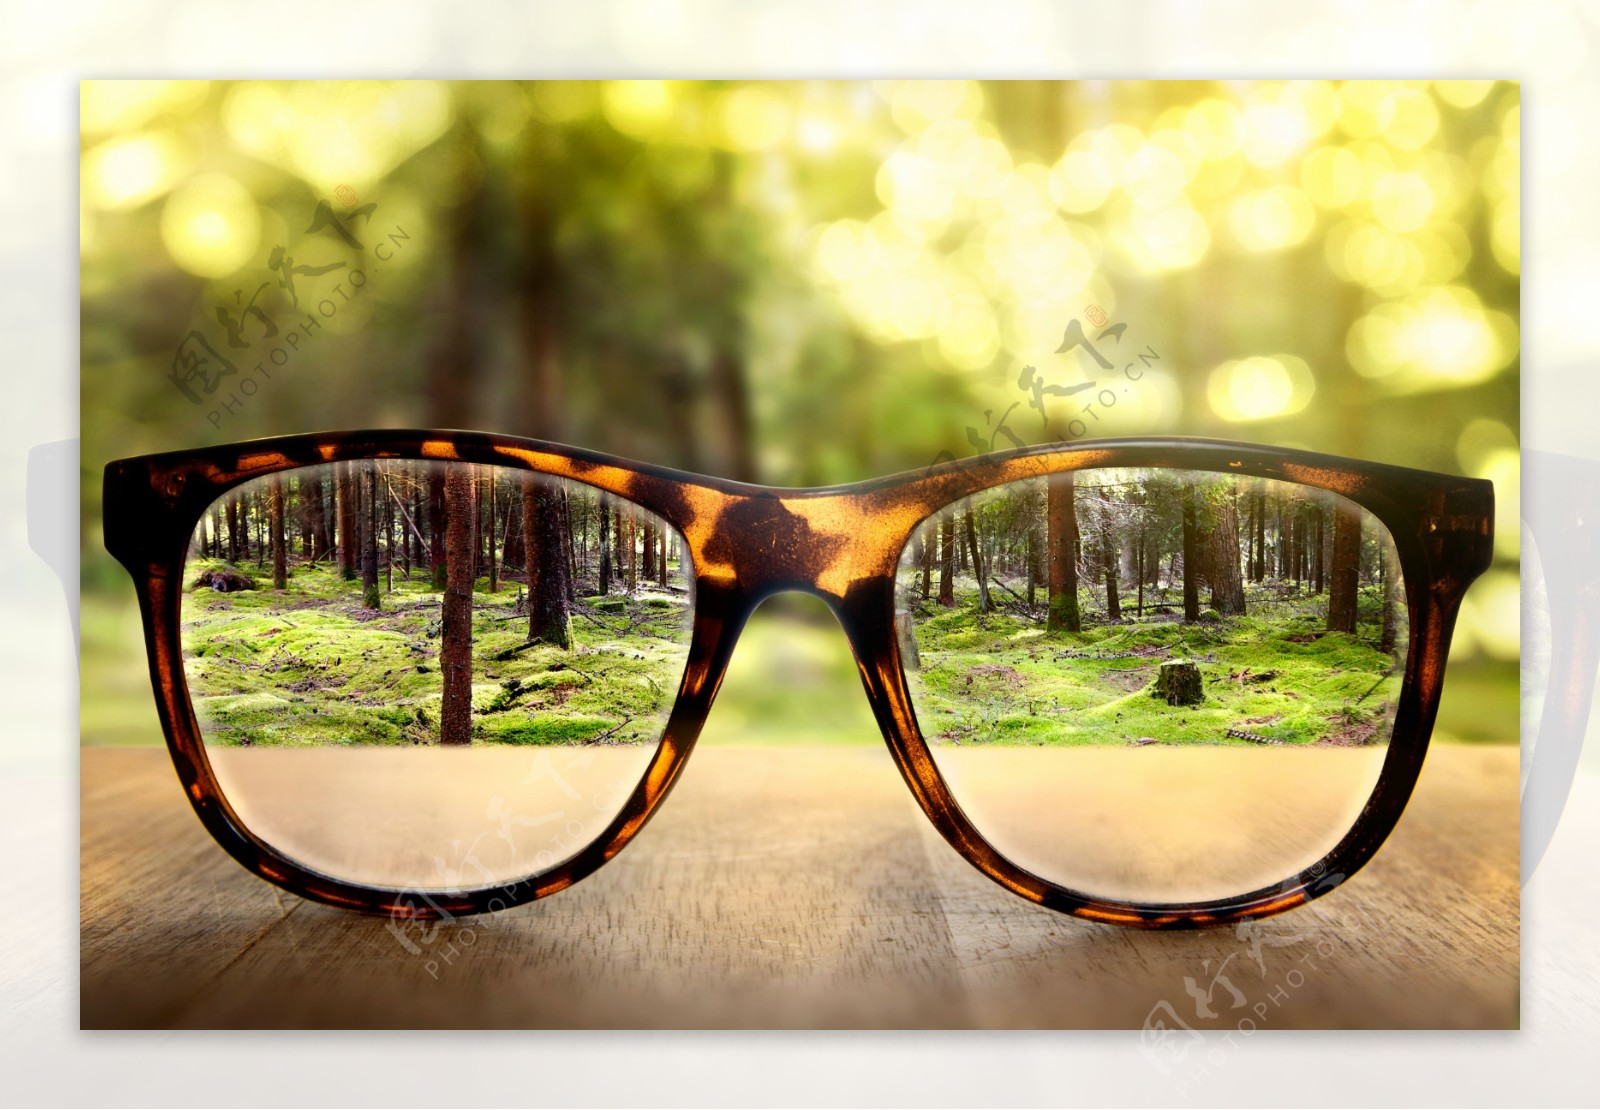 眼镜的树林风景图片